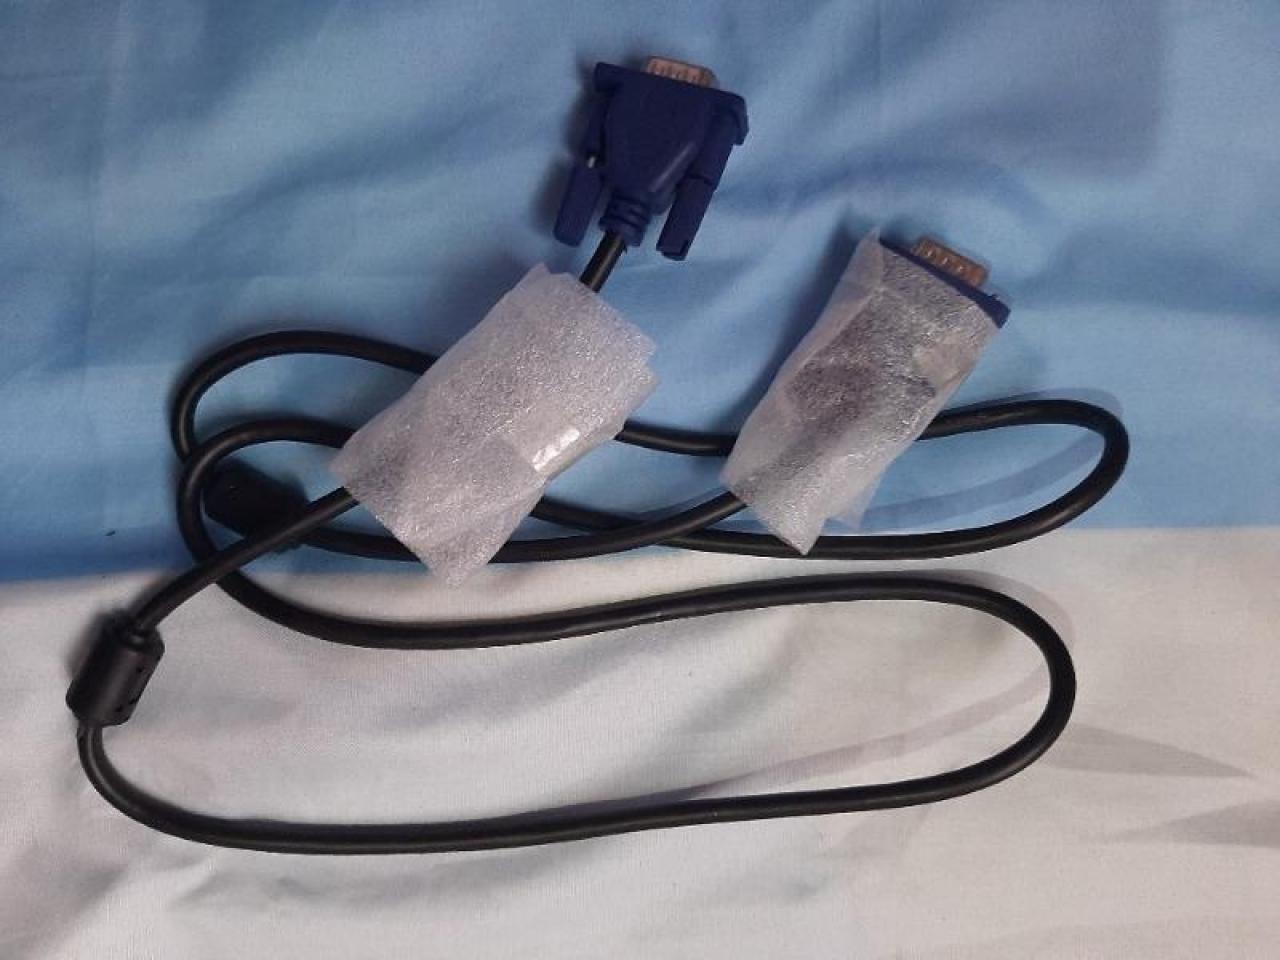 Cable Vga A Vga 1.5 M Azul Macho-Macho Con Doble Filtro De Ferrite